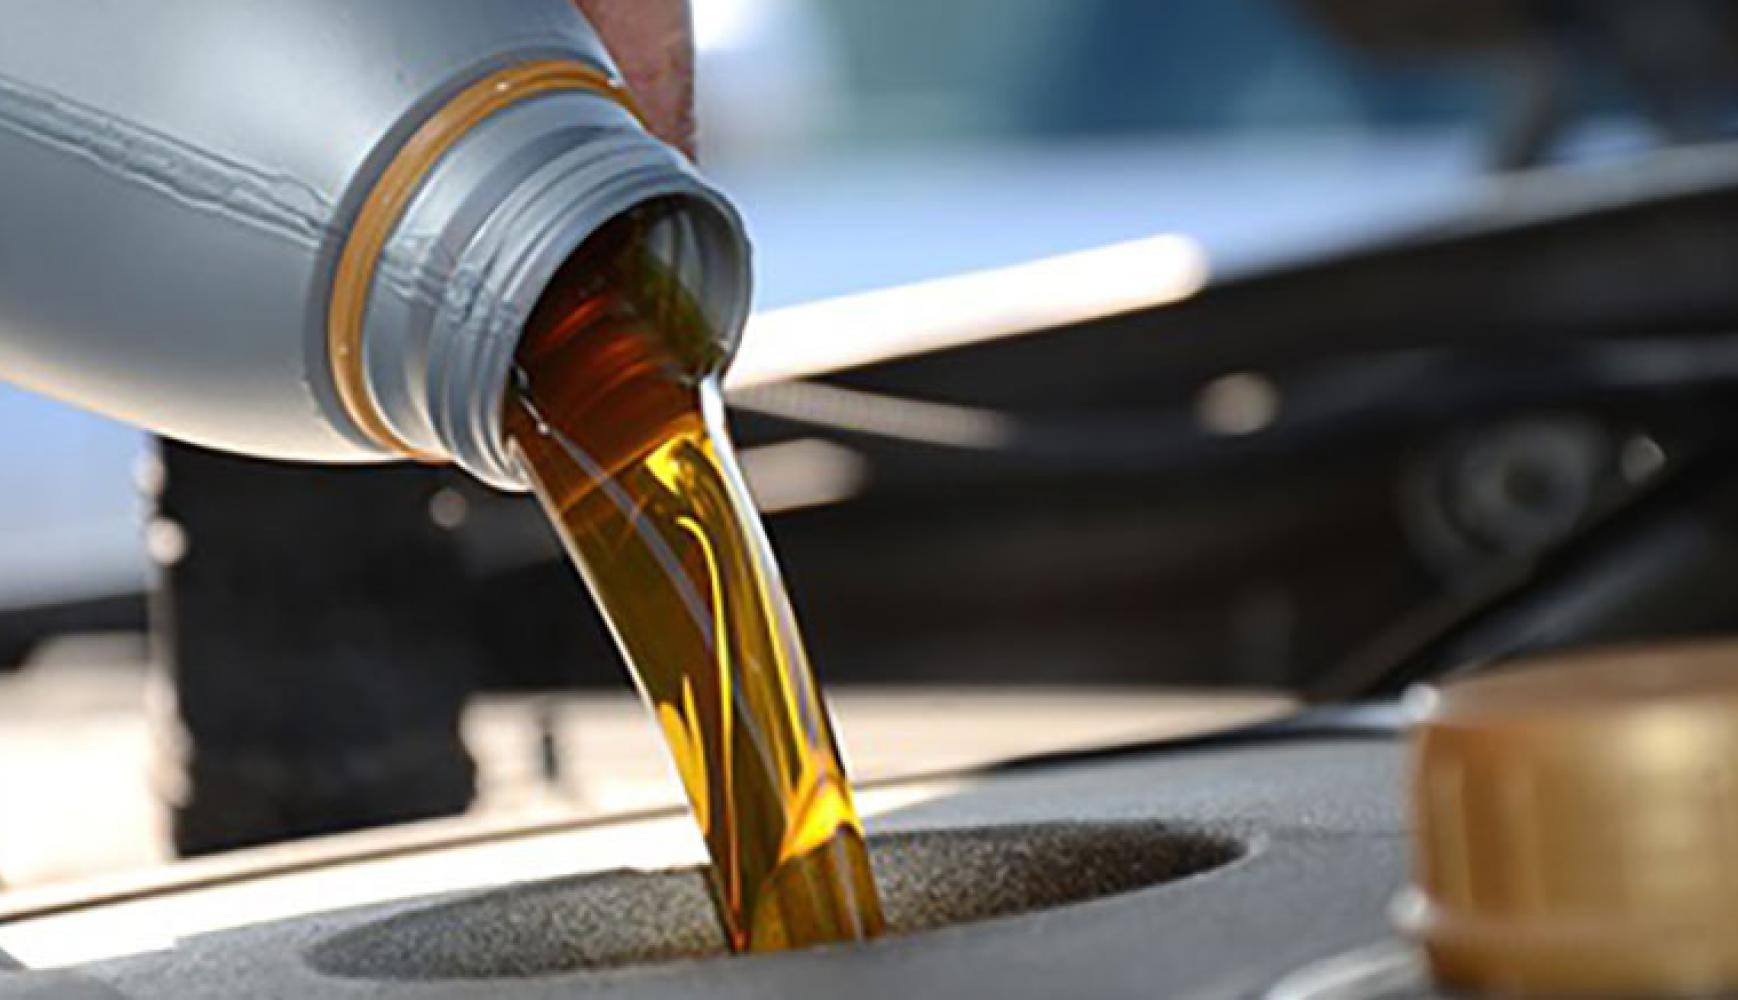 Co se stane kdyz Naleju moc oleje do auta?